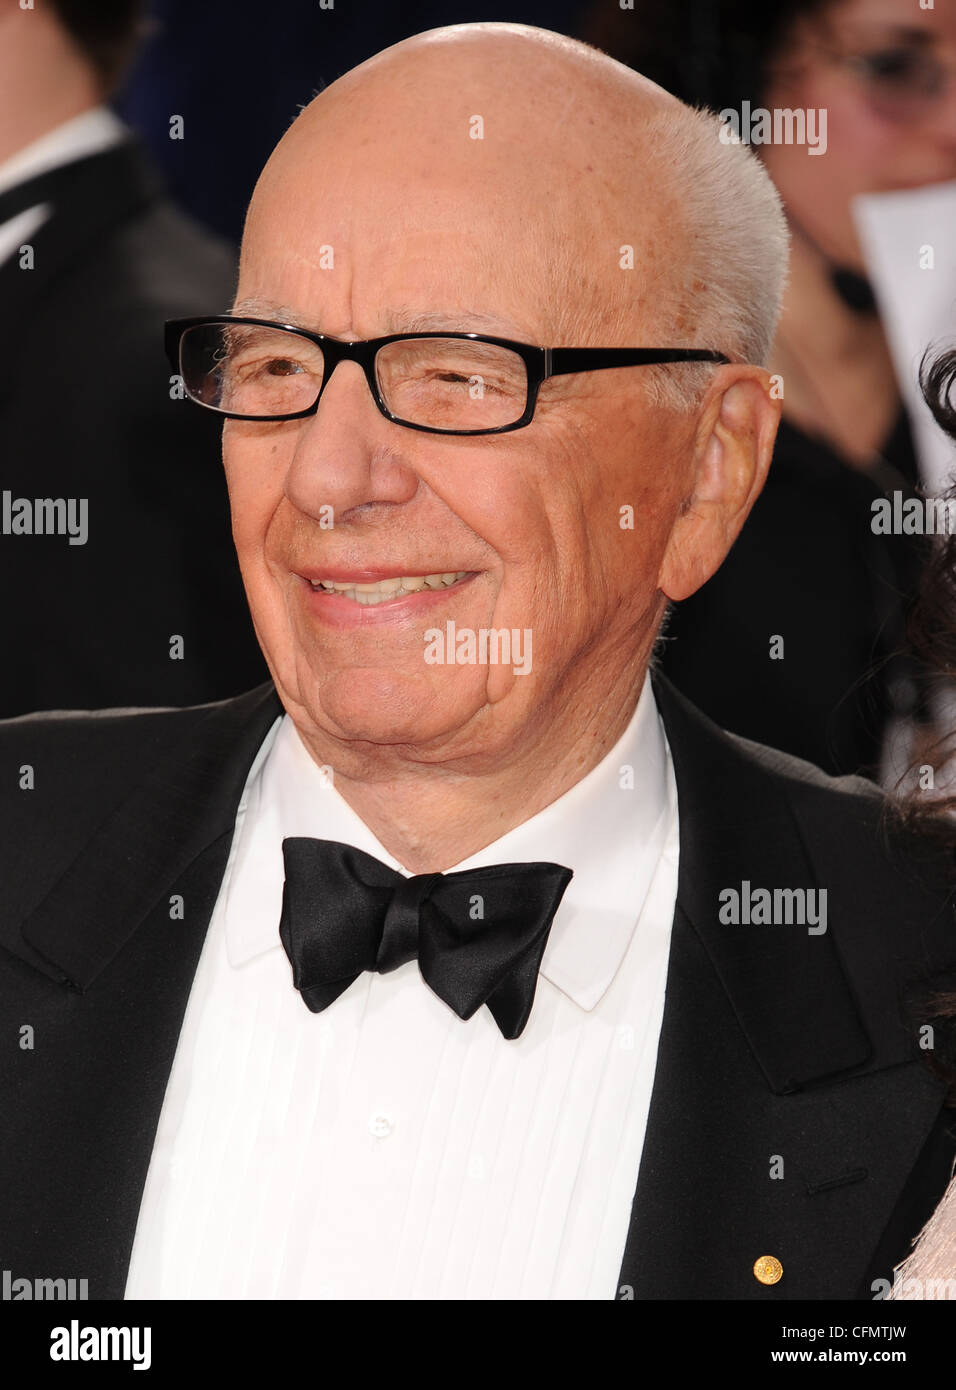 Empresario de medios australiano Rupert Murdoch en diciembre de 2011. Foto Jeffrey Mayer Foto de stock